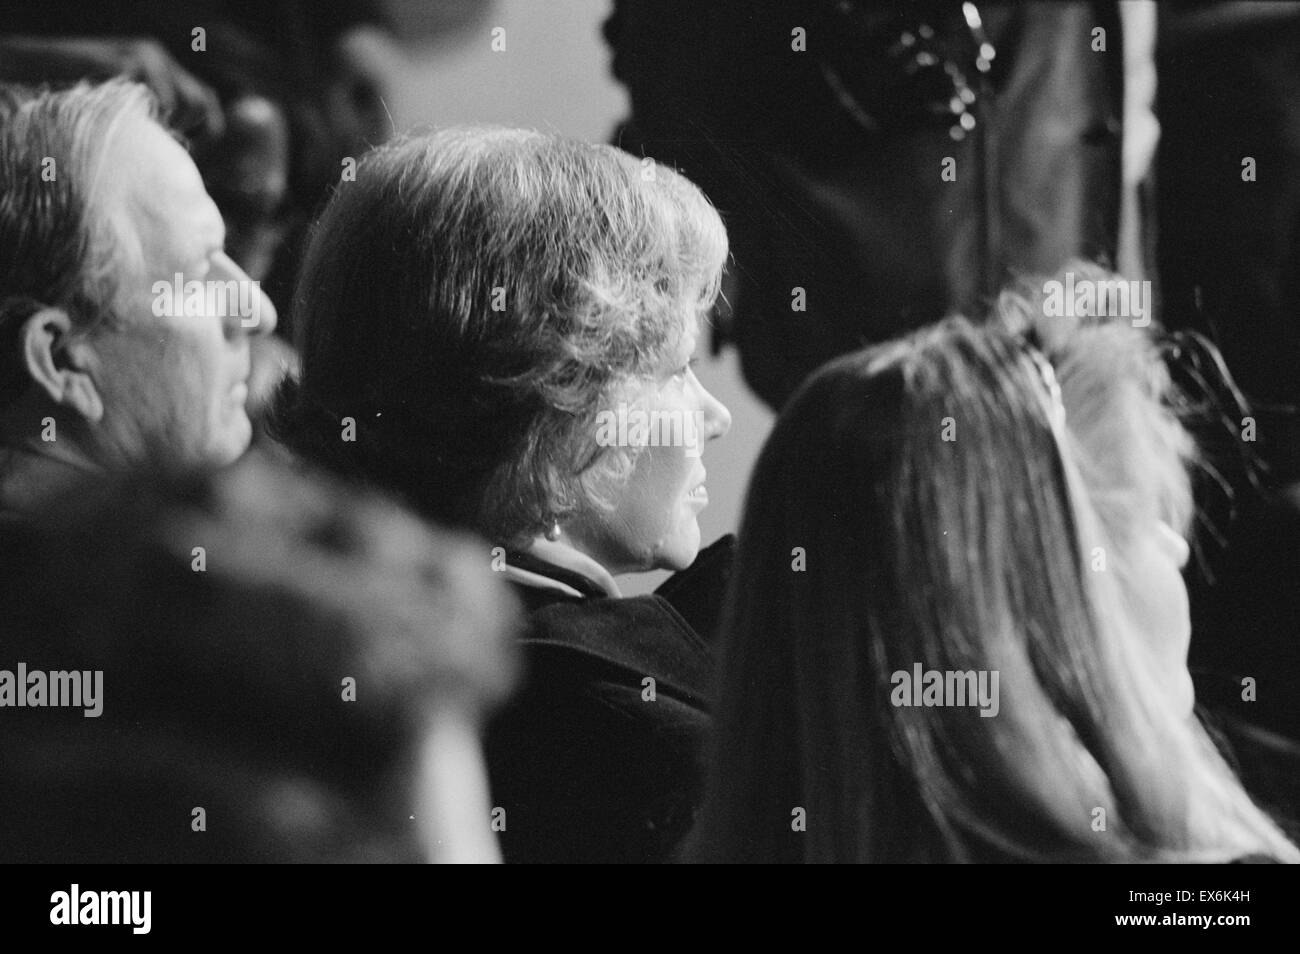 Foto von First Lady Rosalynn Carter auf Pressekonferenz von Präsident Carter. Fotografiert von Warren K. Leffler. Datierte 1980 Stockfoto